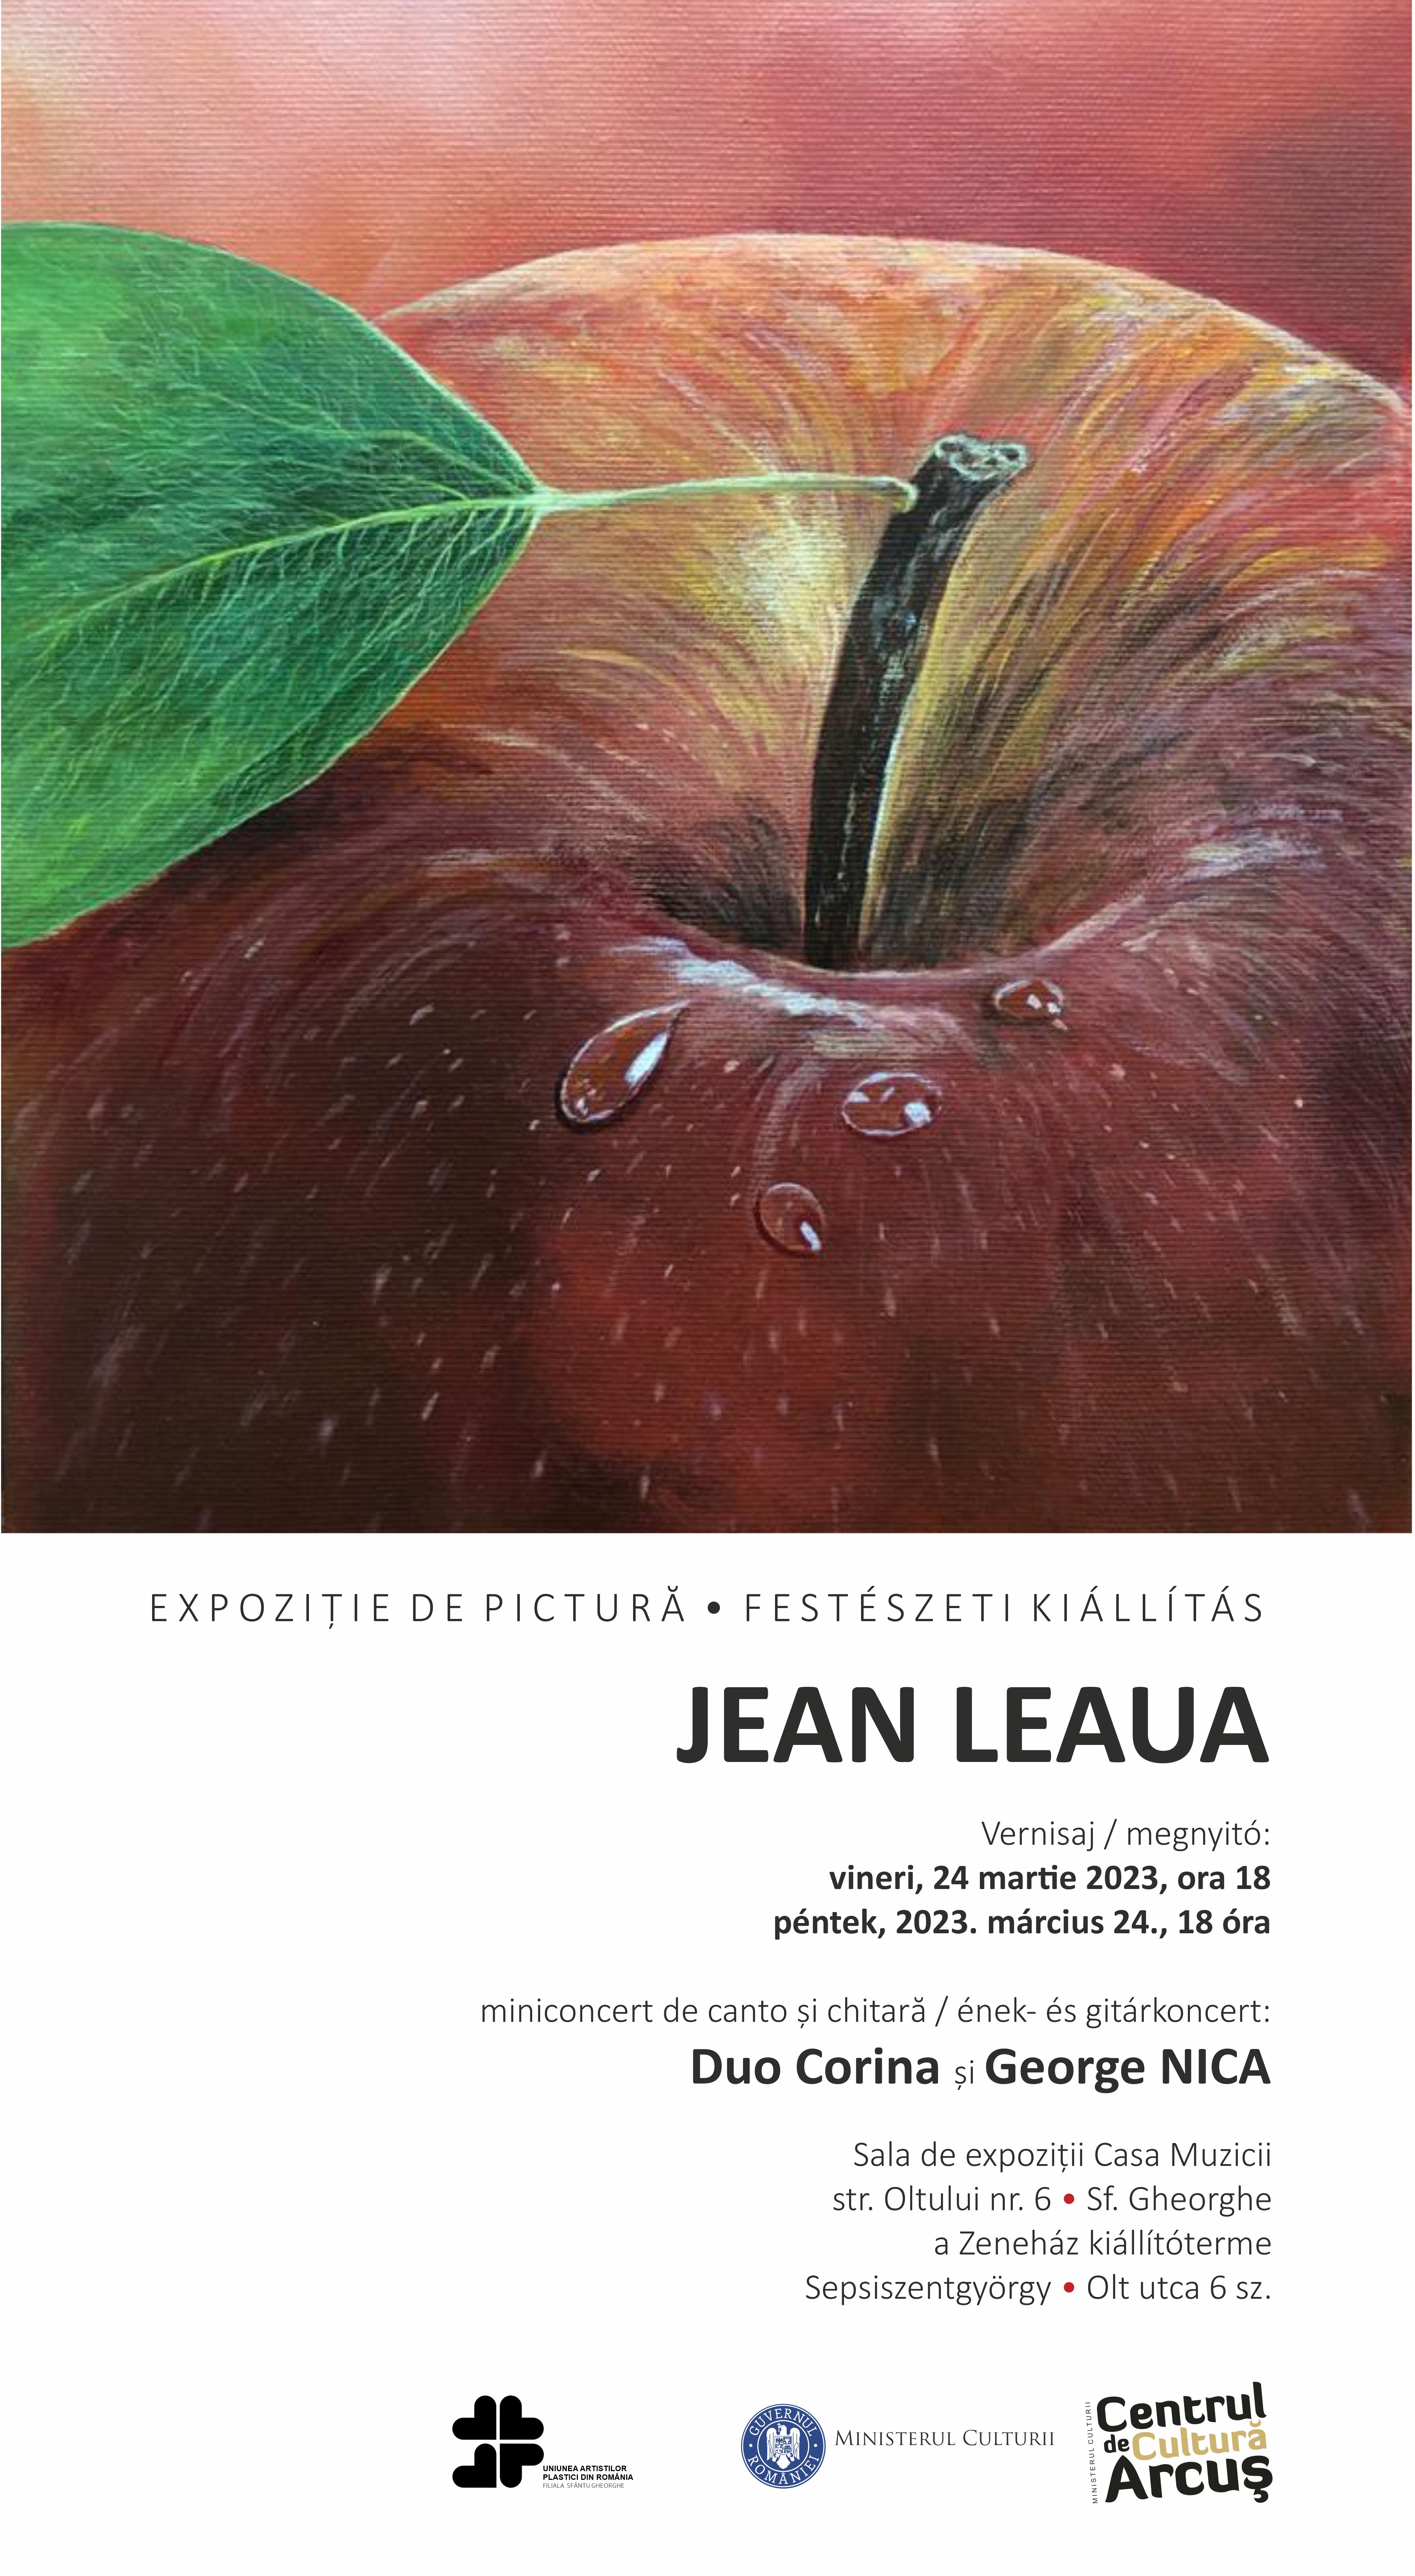 JEAN LEAUA - Painting exhibition